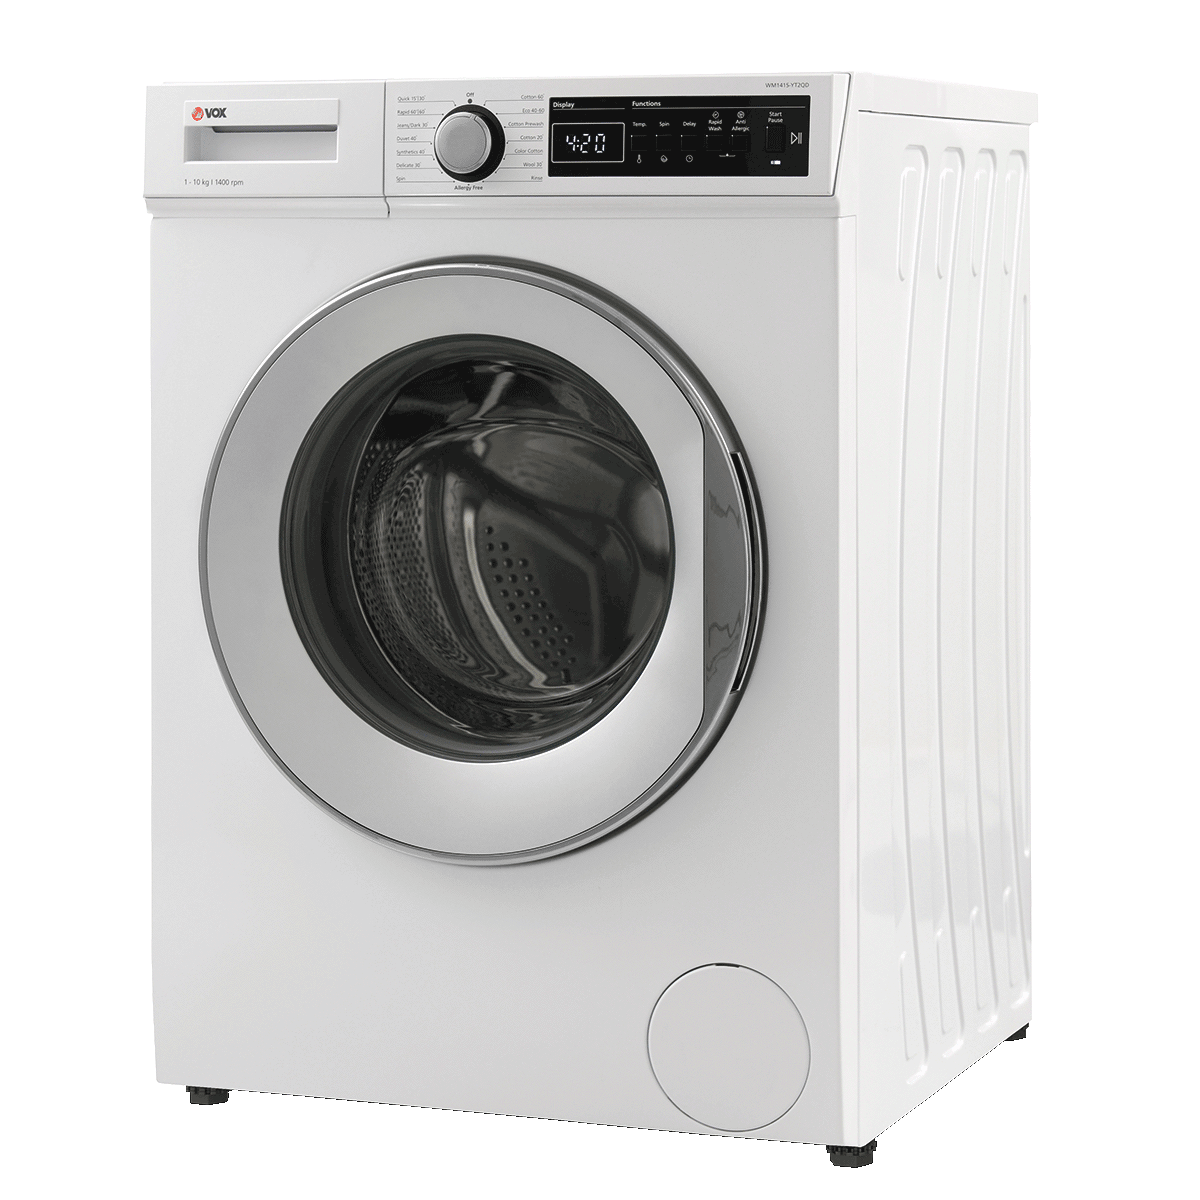 Washing machine WM1415-YT2QD 